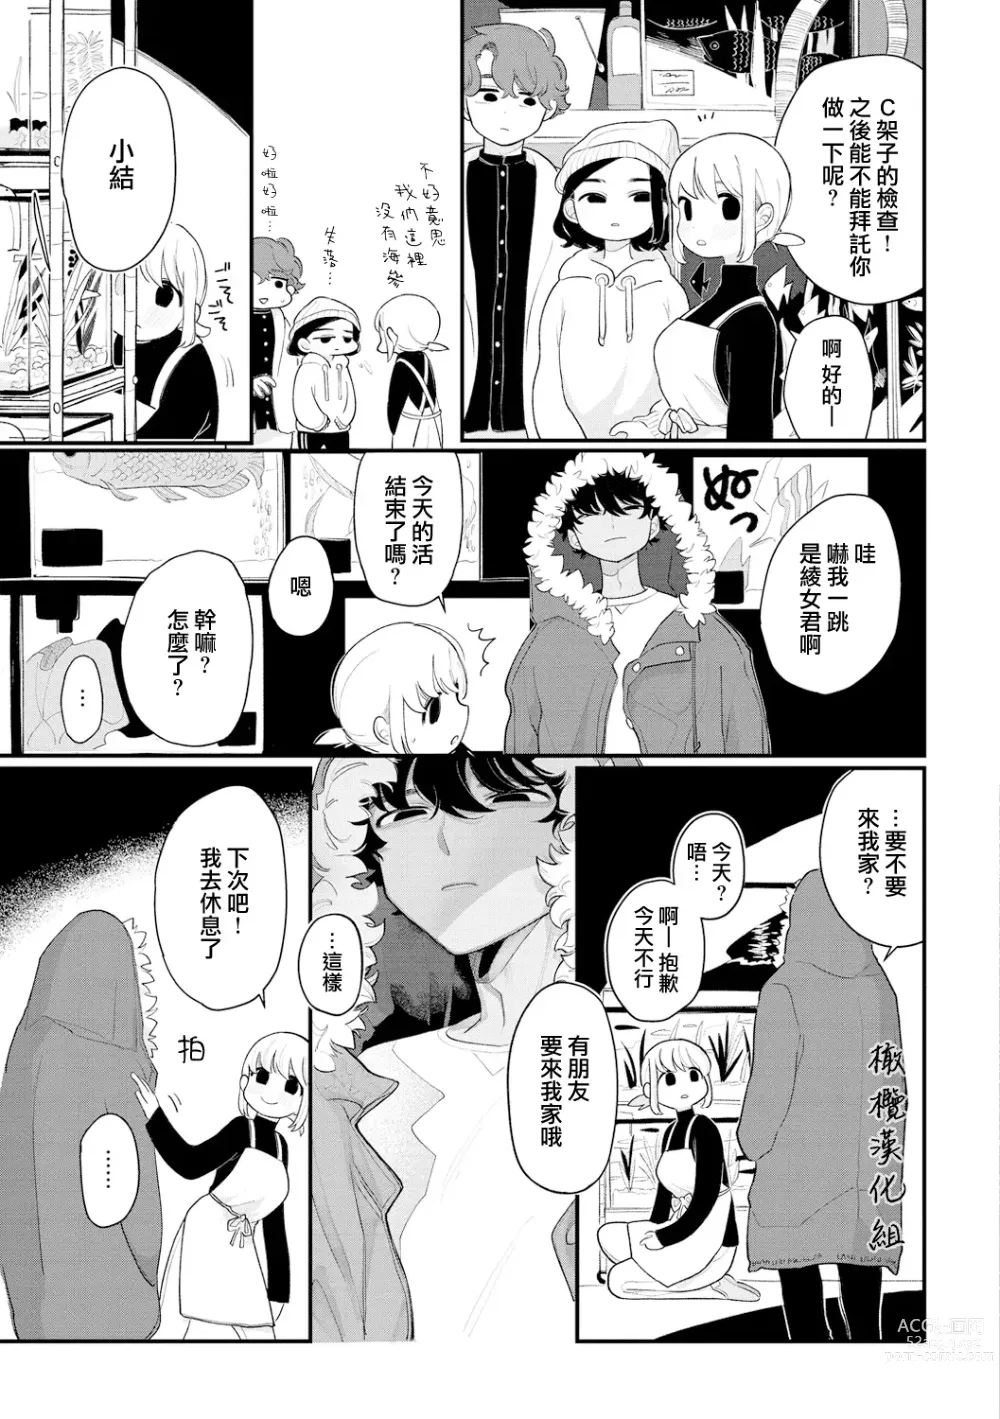 Page 5 of manga 好好相处吧